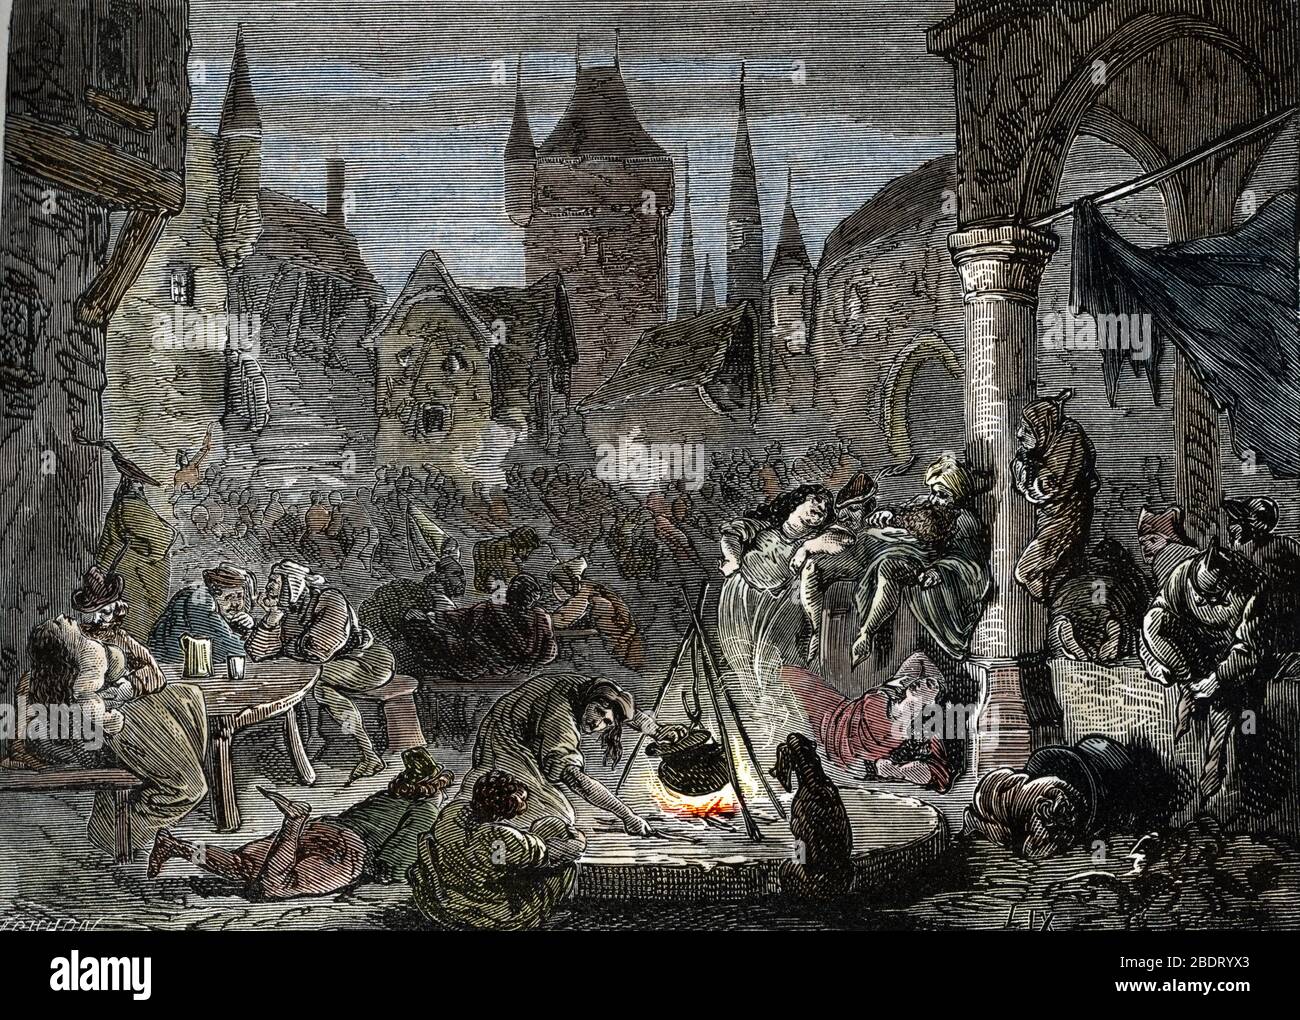 Die Darstellung des Wunders peuplee de mendiants et voleurs, Paris (der Hof der Wunder, Slumviertel von Paris), die im 19. Jahrhundert graviert Stockfoto